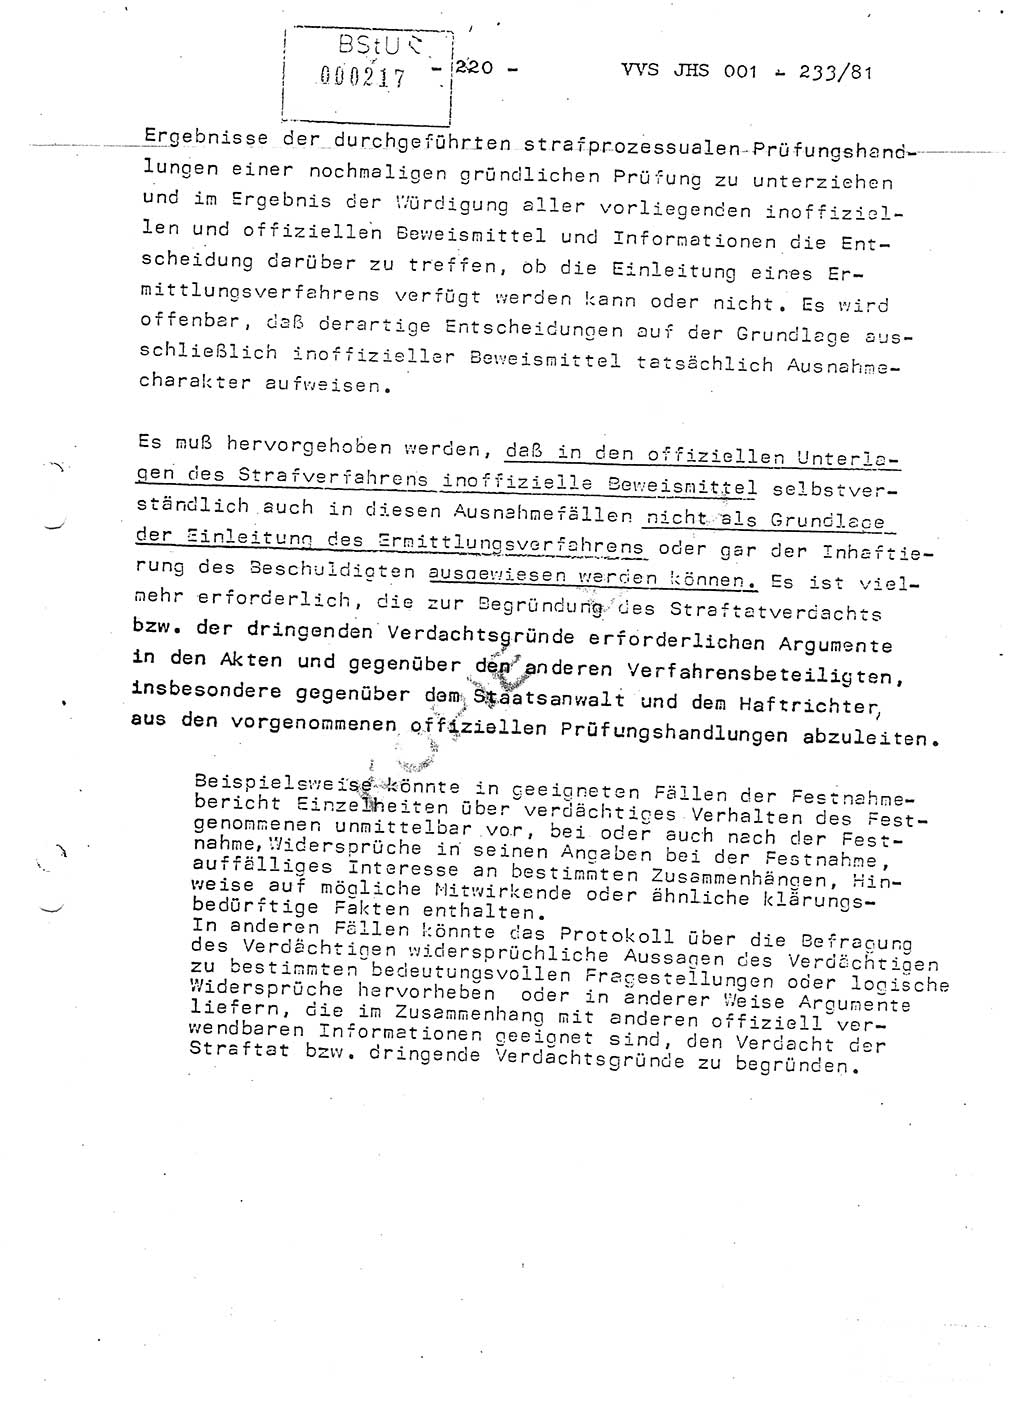 Dissertation Oberstleutnant Horst Zank (JHS), Oberstleutnant Dr. Karl-Heinz Knoblauch (JHS), Oberstleutnant Gustav-Adolf Kowalewski (HA Ⅸ), Oberstleutnant Wolfgang Plötner (HA Ⅸ), Ministerium für Staatssicherheit (MfS) [Deutsche Demokratische Republik (DDR)], Juristische Hochschule (JHS), Vertrauliche Verschlußsache (VVS) o001-233/81, Potsdam 1981, Blatt 220 (Diss. MfS DDR JHS VVS o001-233/81 1981, Bl. 220)